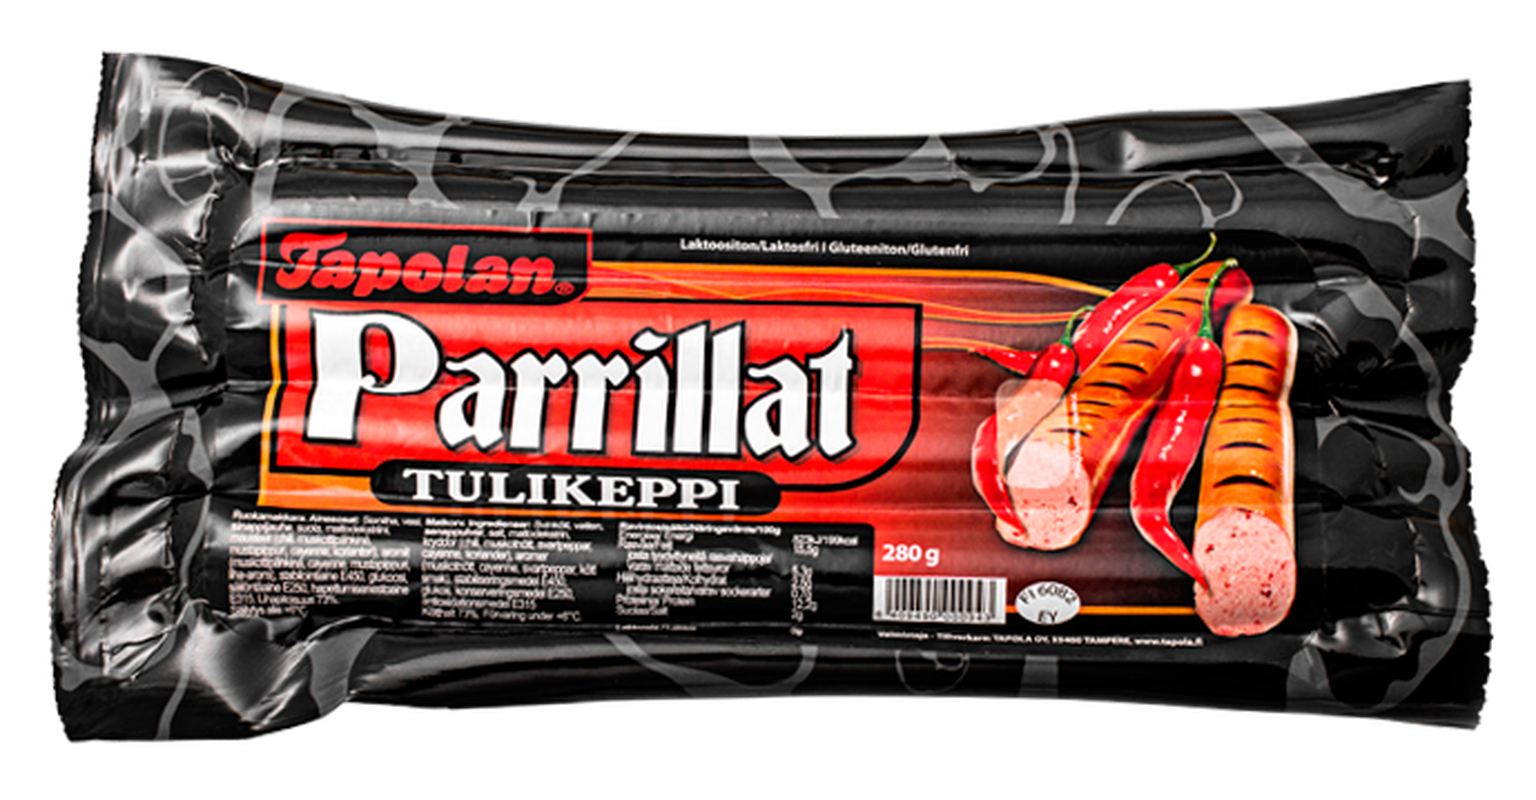 Tapola kutsub partii vürtsikaid grillvorste, mille säilivuskuupäevaks on pakendil mainitud 12. august 2015.